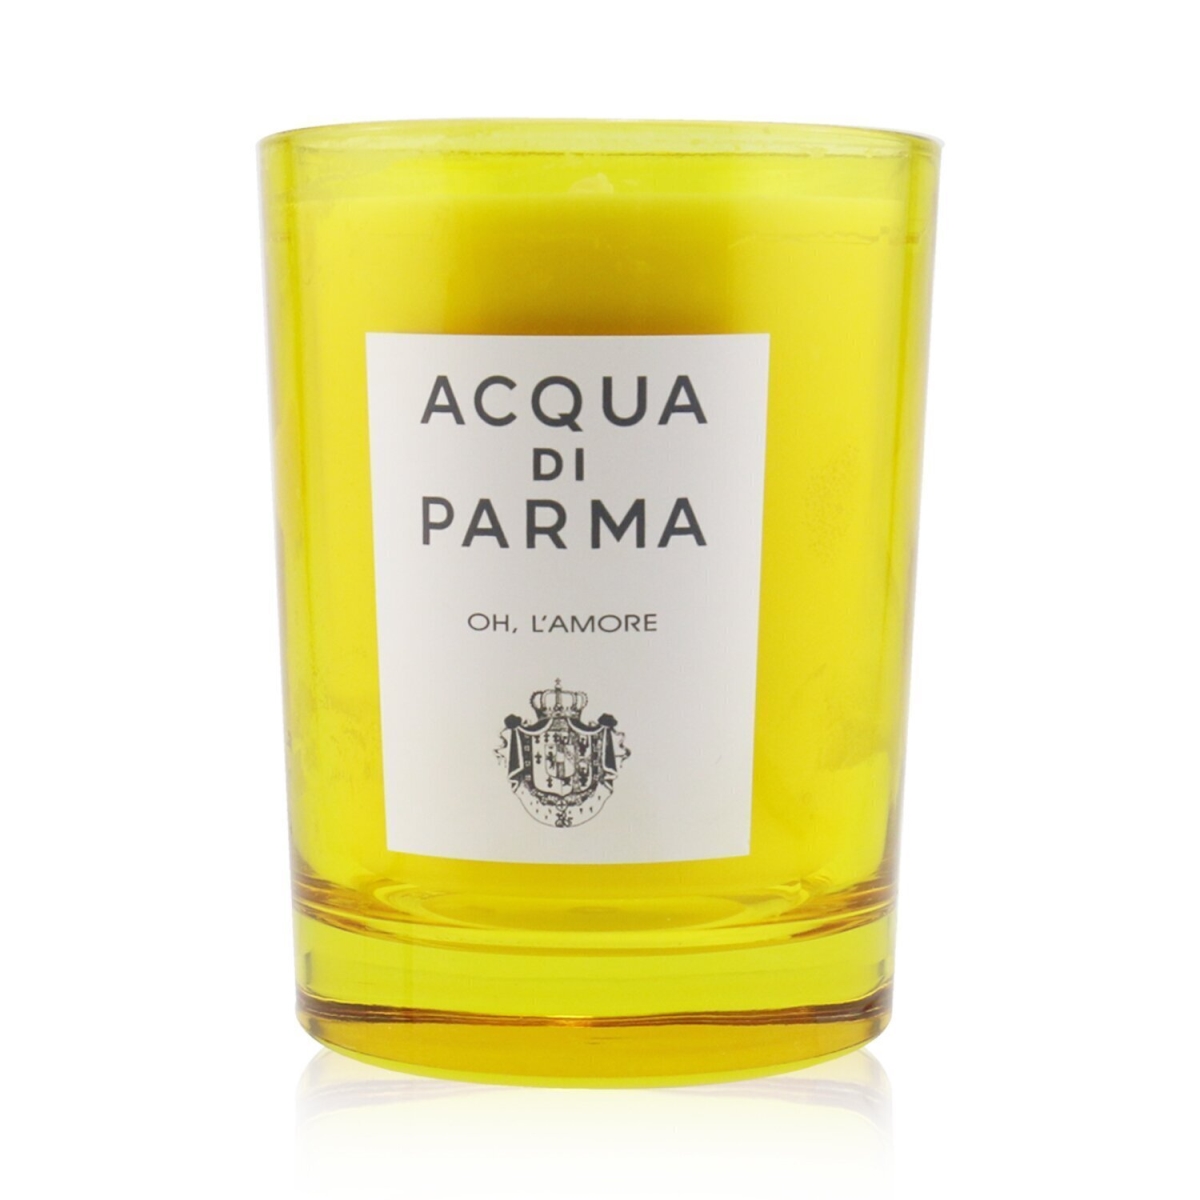 Picture of Acqua Di Parma 250313 7.05 oz Scented Candle - Oh L Amore